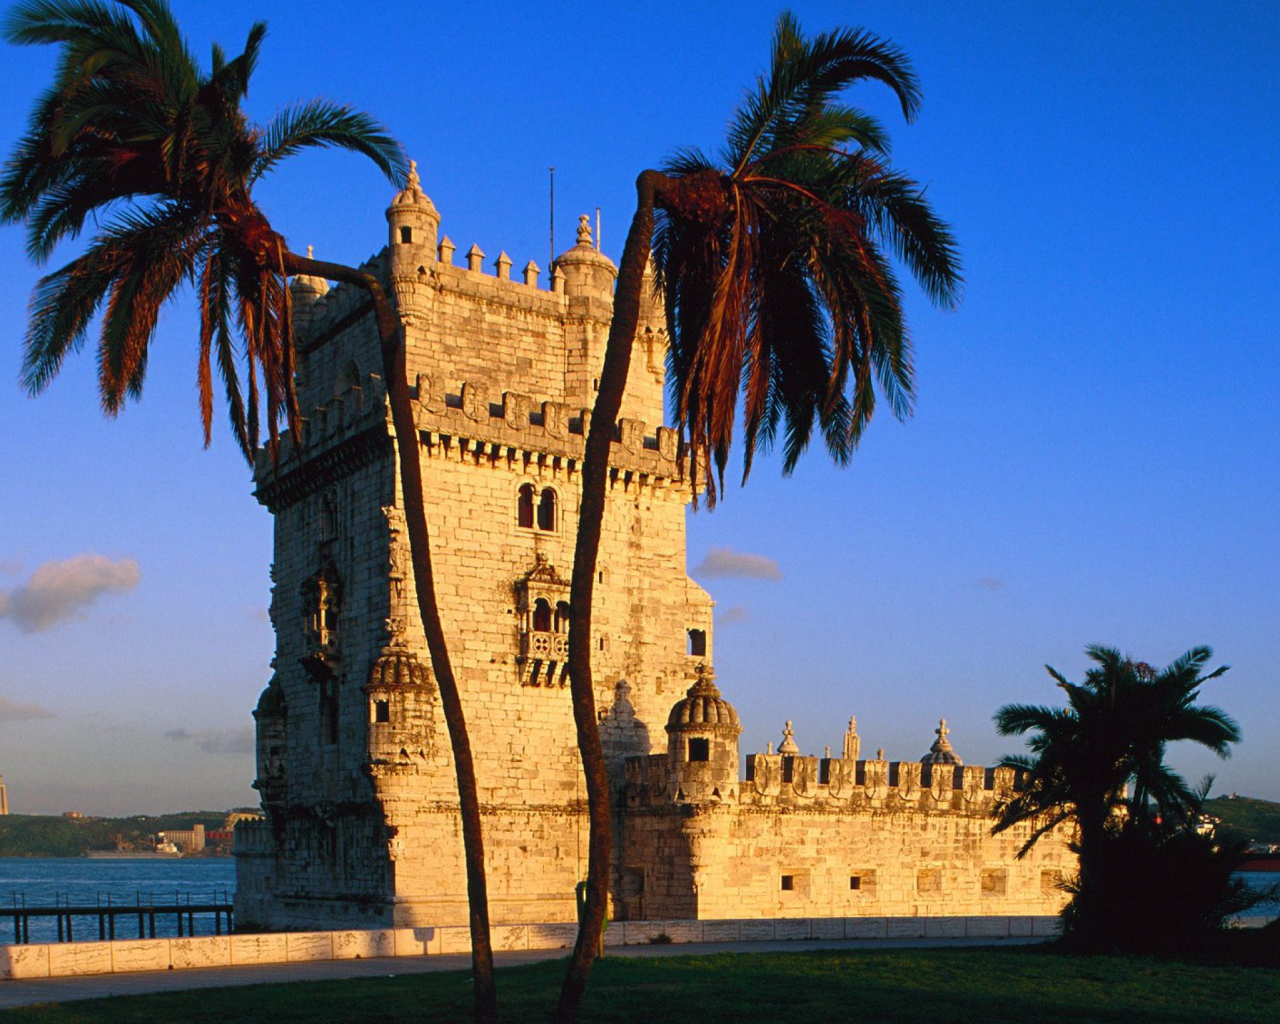 Das Belem Tower Portugal Wallpaper 1280x1024